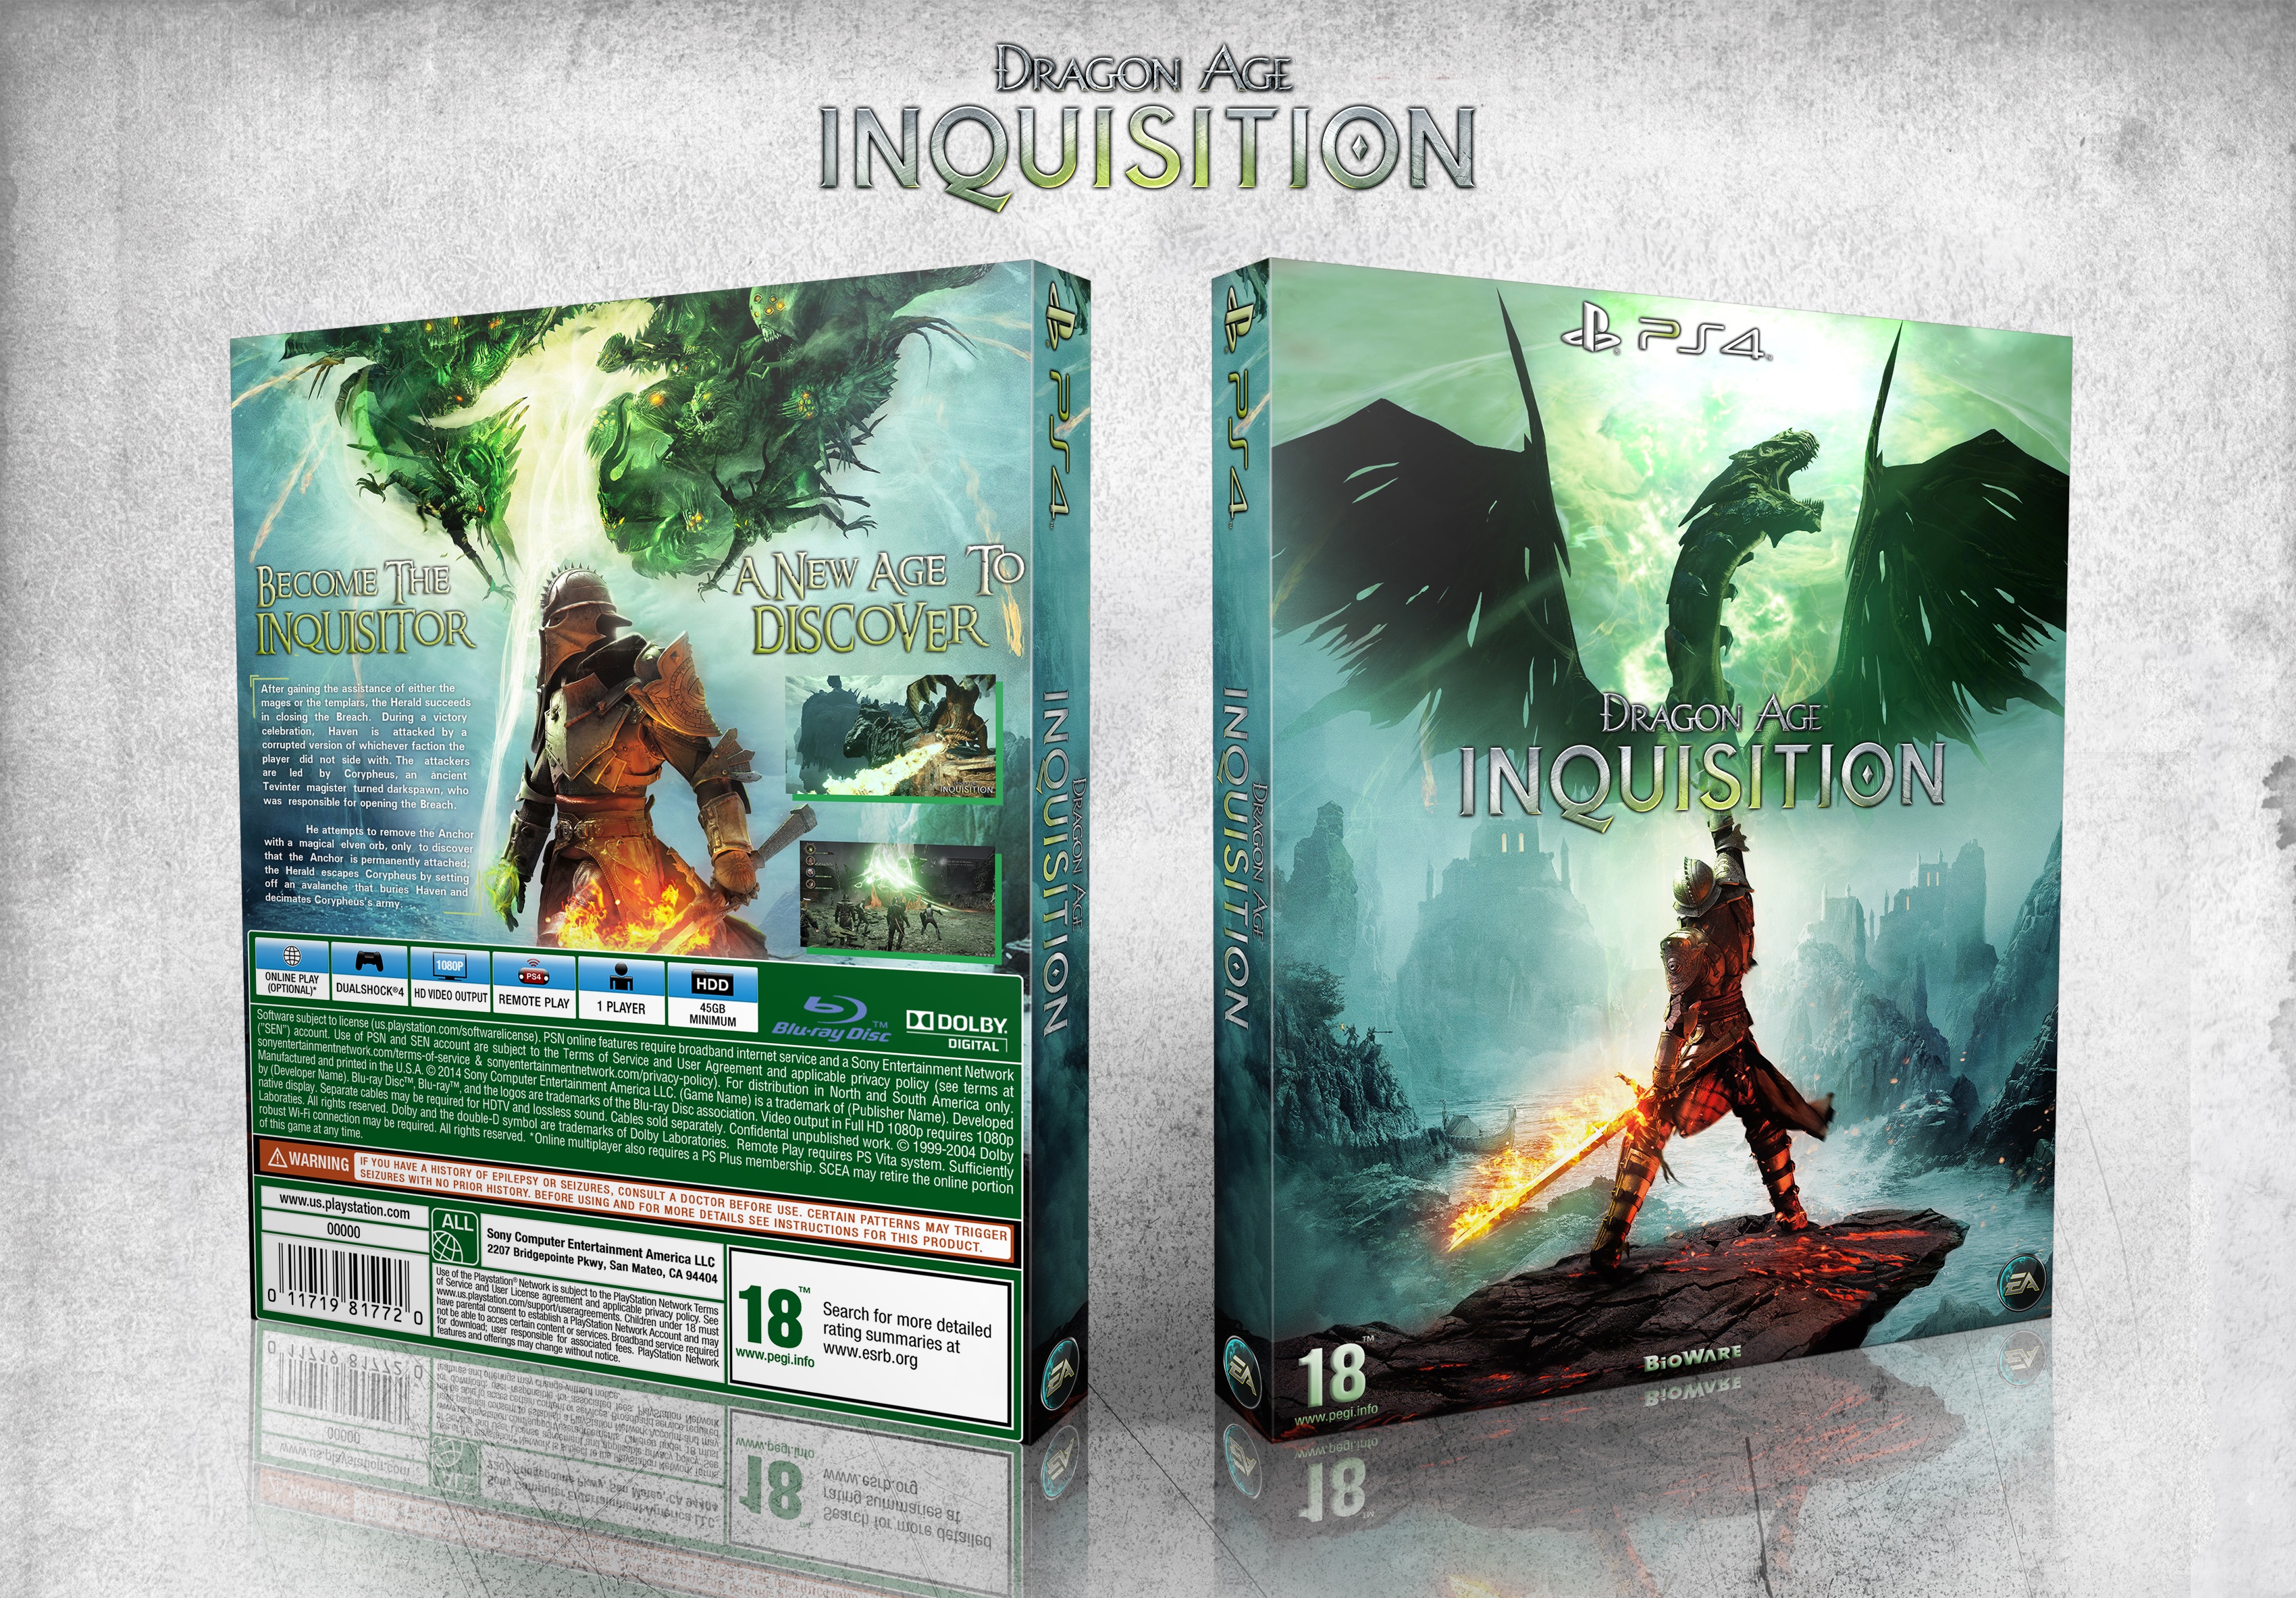 Dragon Age: Inquisition box cover